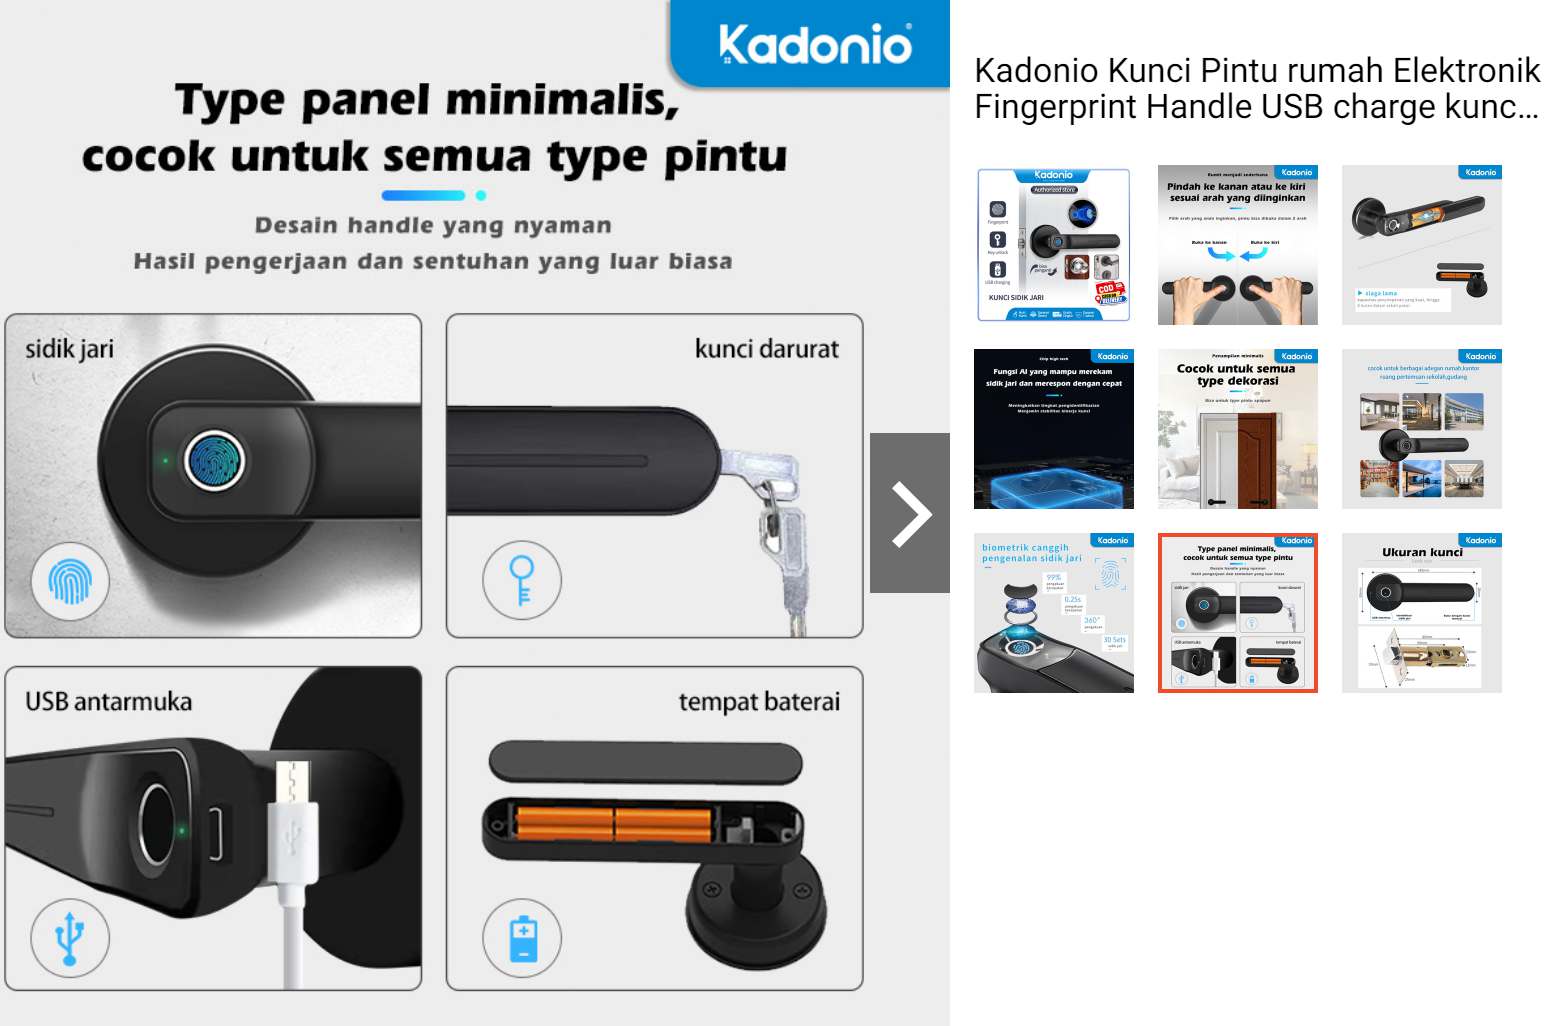 Kadonio HD-401: Kunci Pintu Elektronik Murah dengan Pemindai Sidik Jari dan Kunci Darurat USB